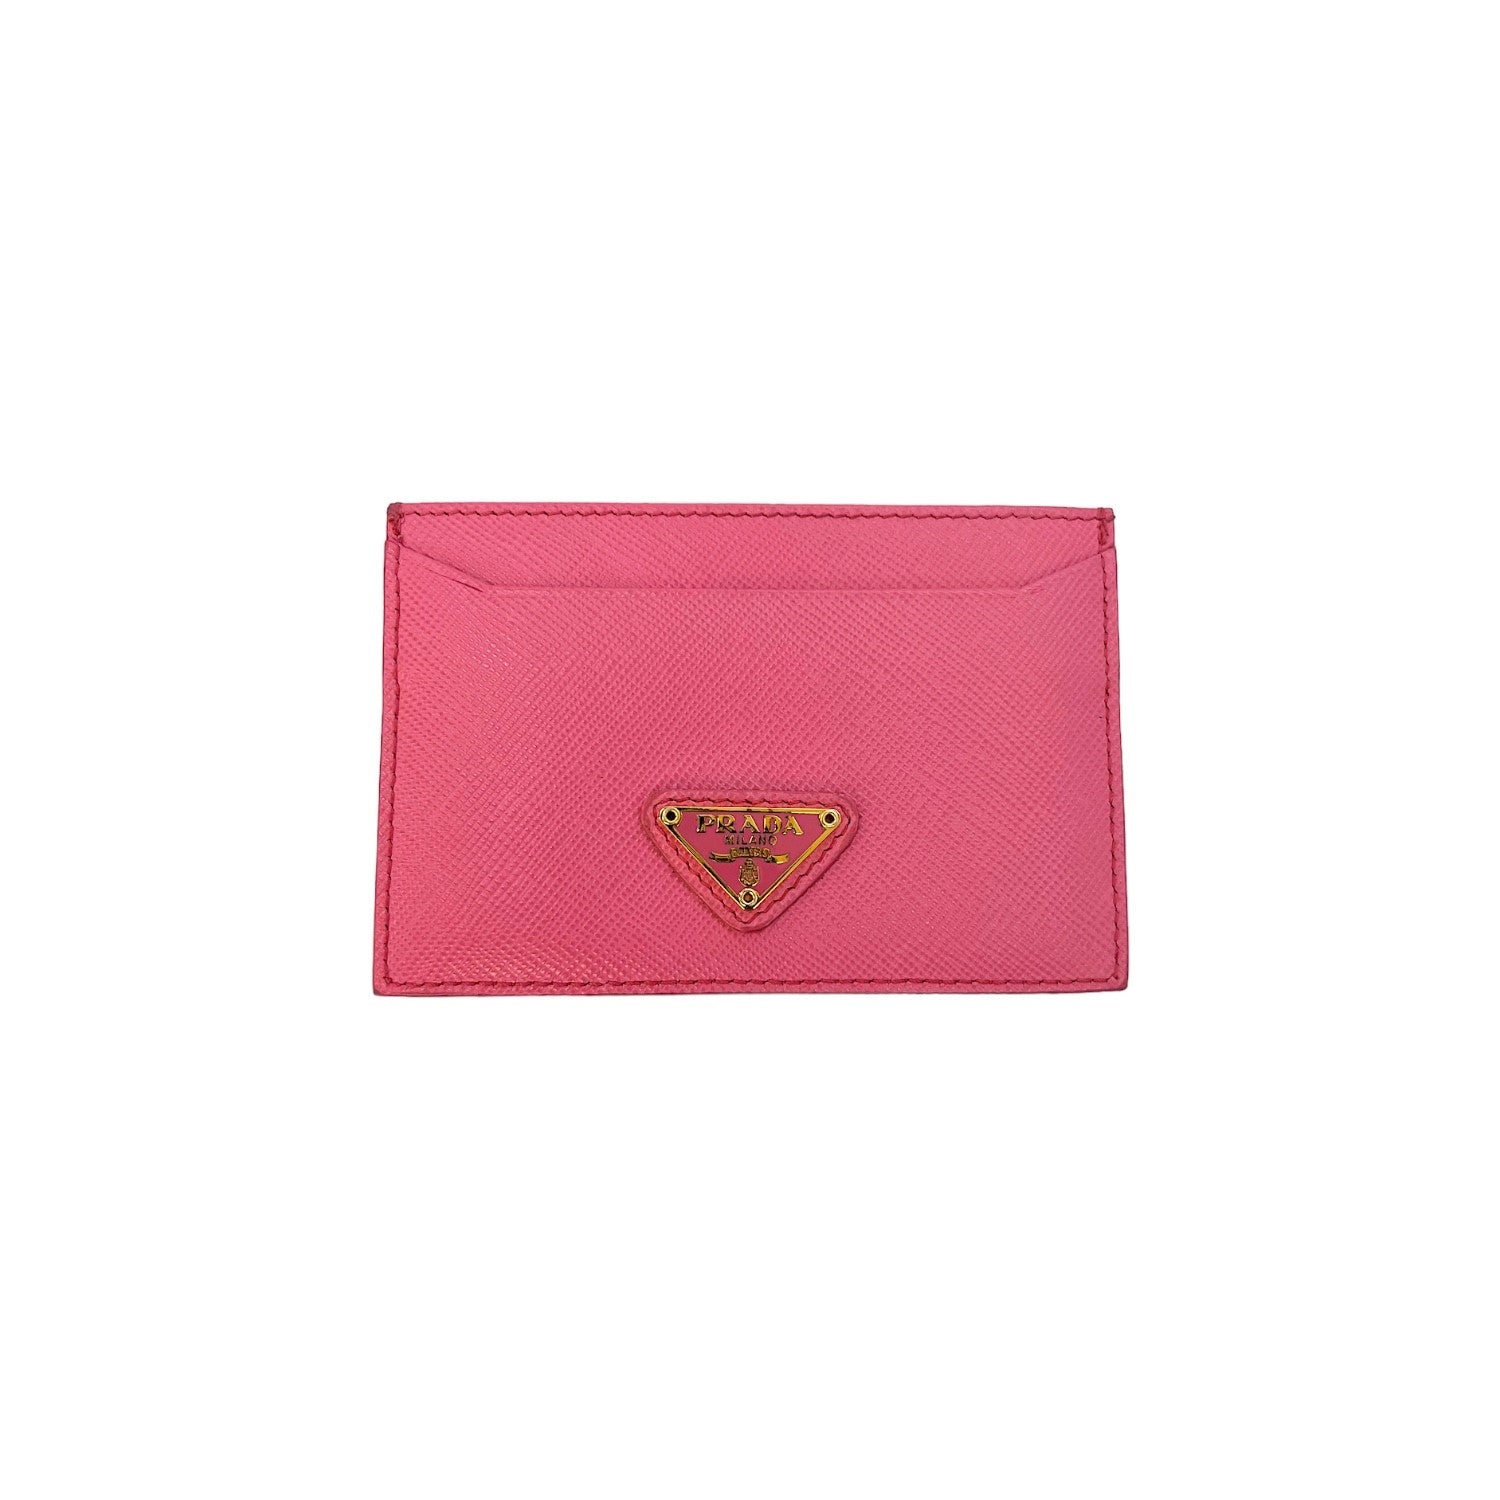 Prada Pink Long Wallet Purse